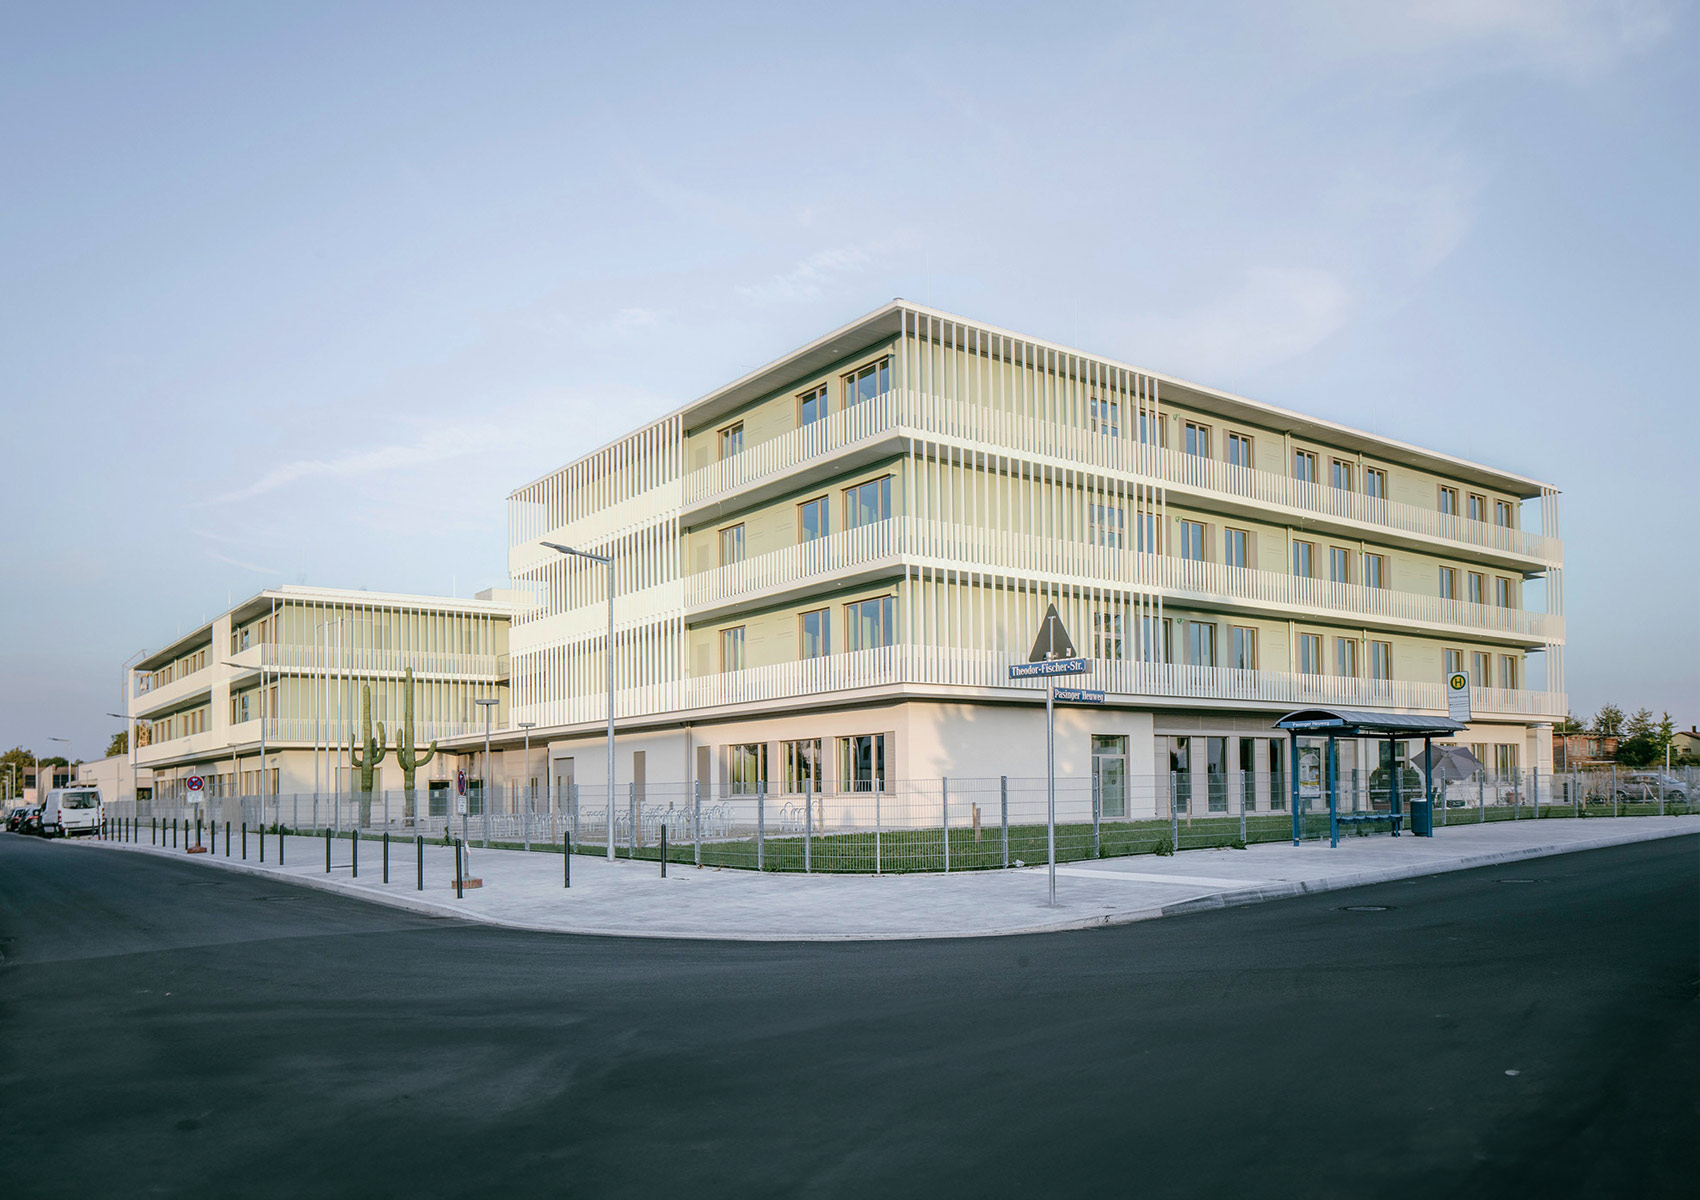 Die fertige Grundschule an der Theodor-Fischer-Straße in München. Im Vordergrund ist eine frisch asphaltierte Straße. In der Mitte des Bildes ist der vierstöckige Neubau.